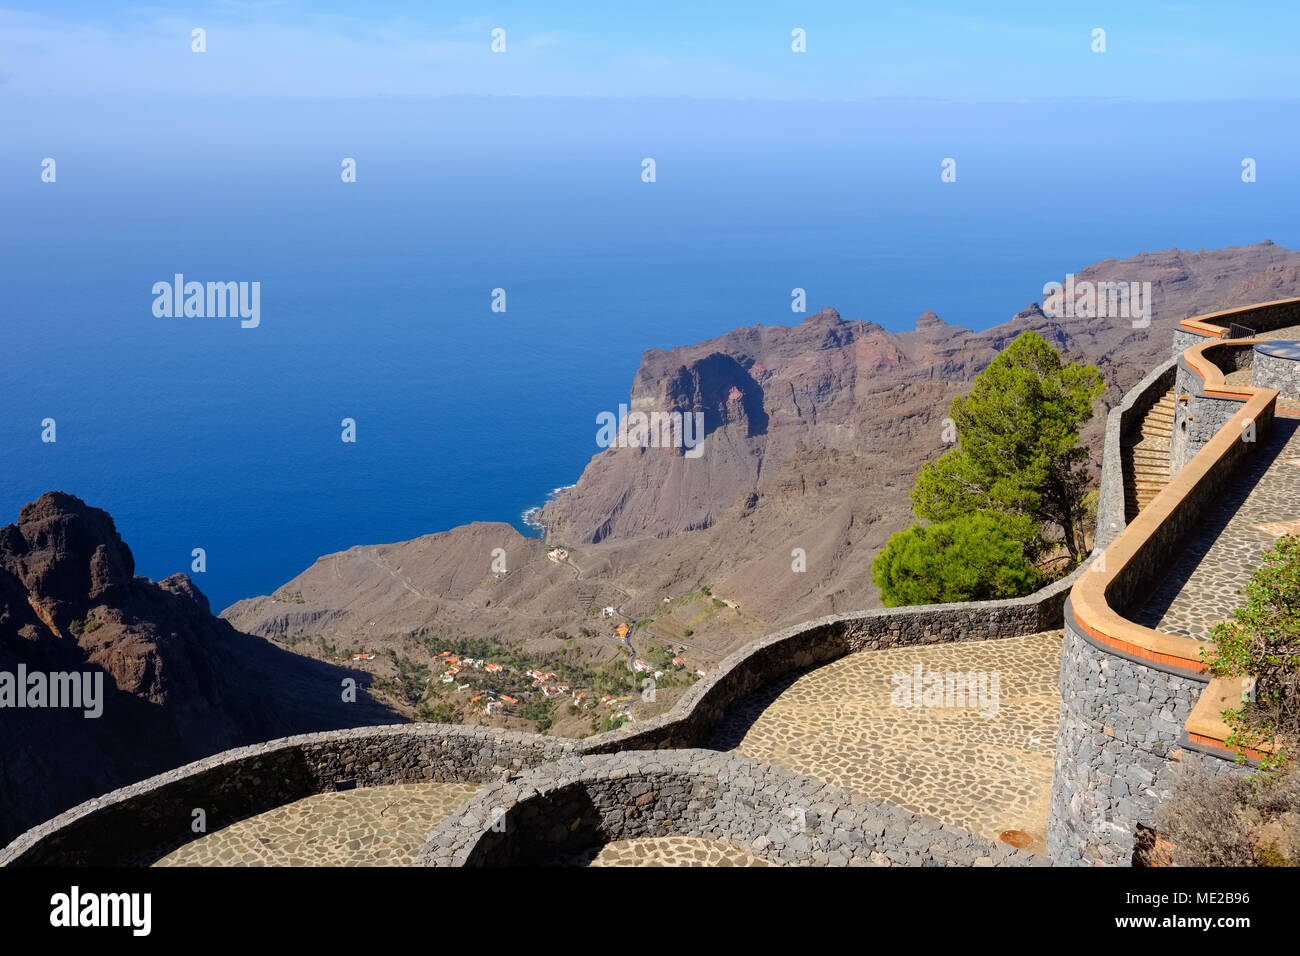 Mirador El Santo en Arure, vue de Taguluche, Valle Gran Rey, La Gomera, Canary Islands, Spain Banque D'Images